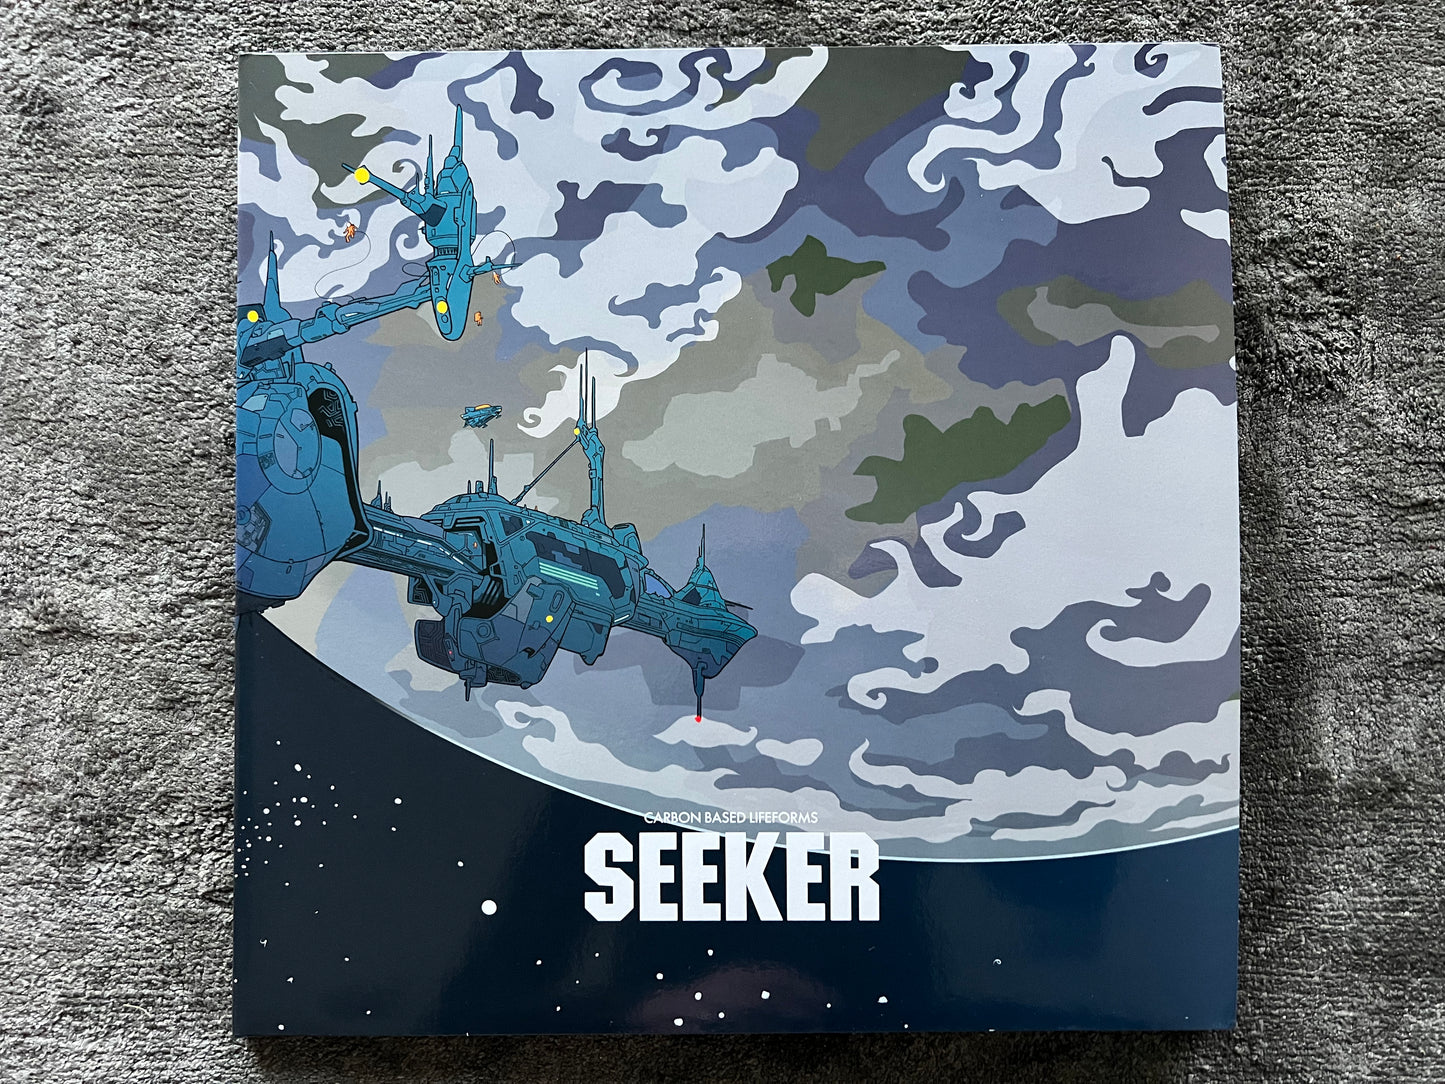 Seeker Double Blue Vinyl